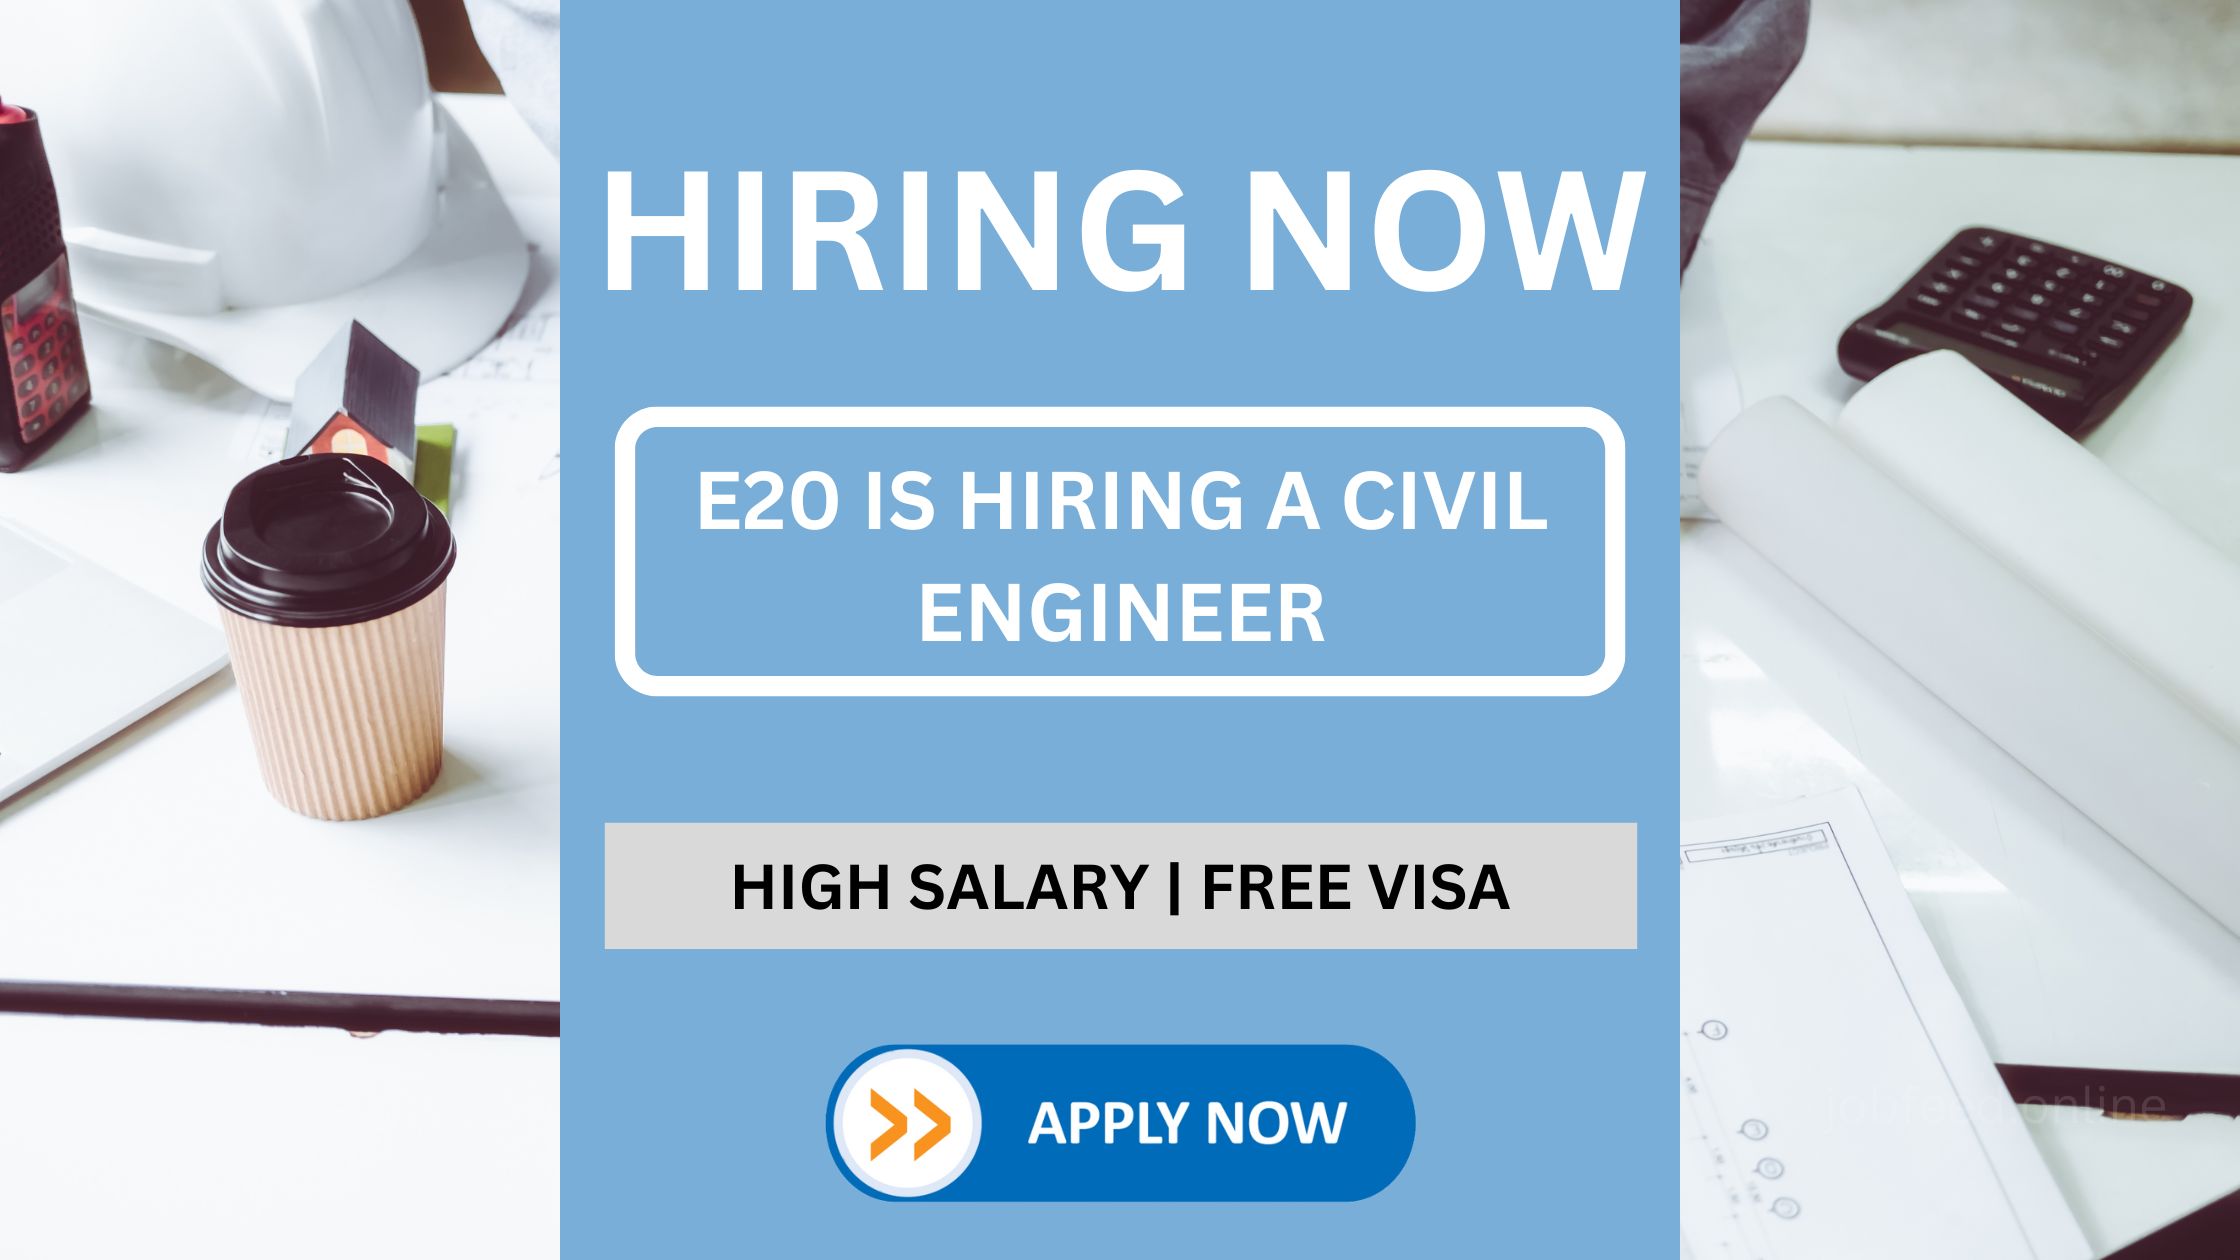 E20 Is Hiring a Civil Engineer